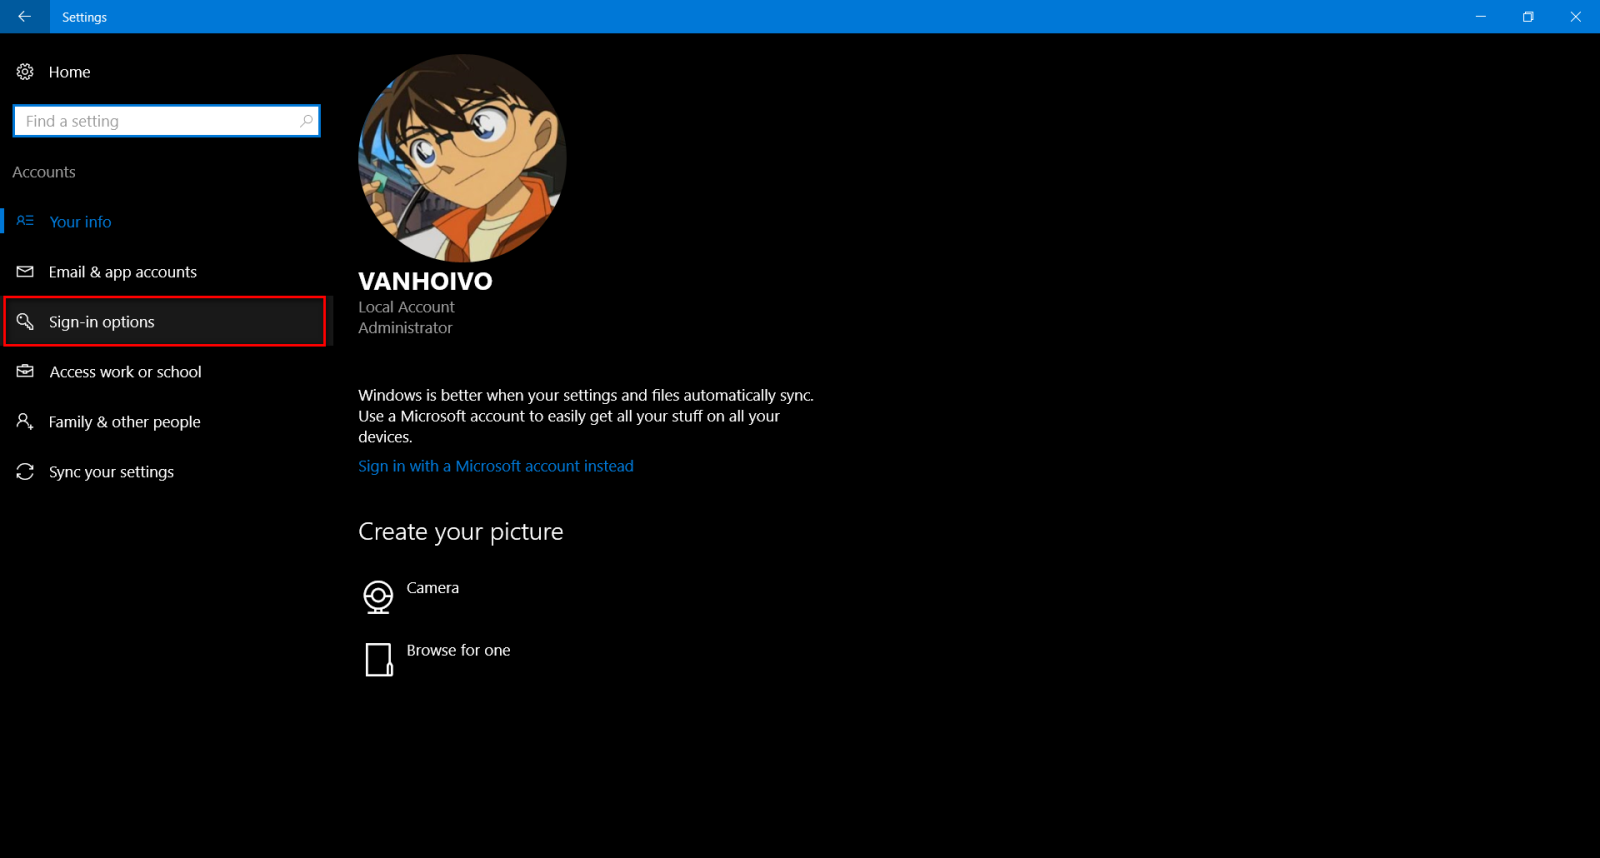 Mẹo đăng nhập Windows 10 bằng hình ảnh - Fptshop.com.vn